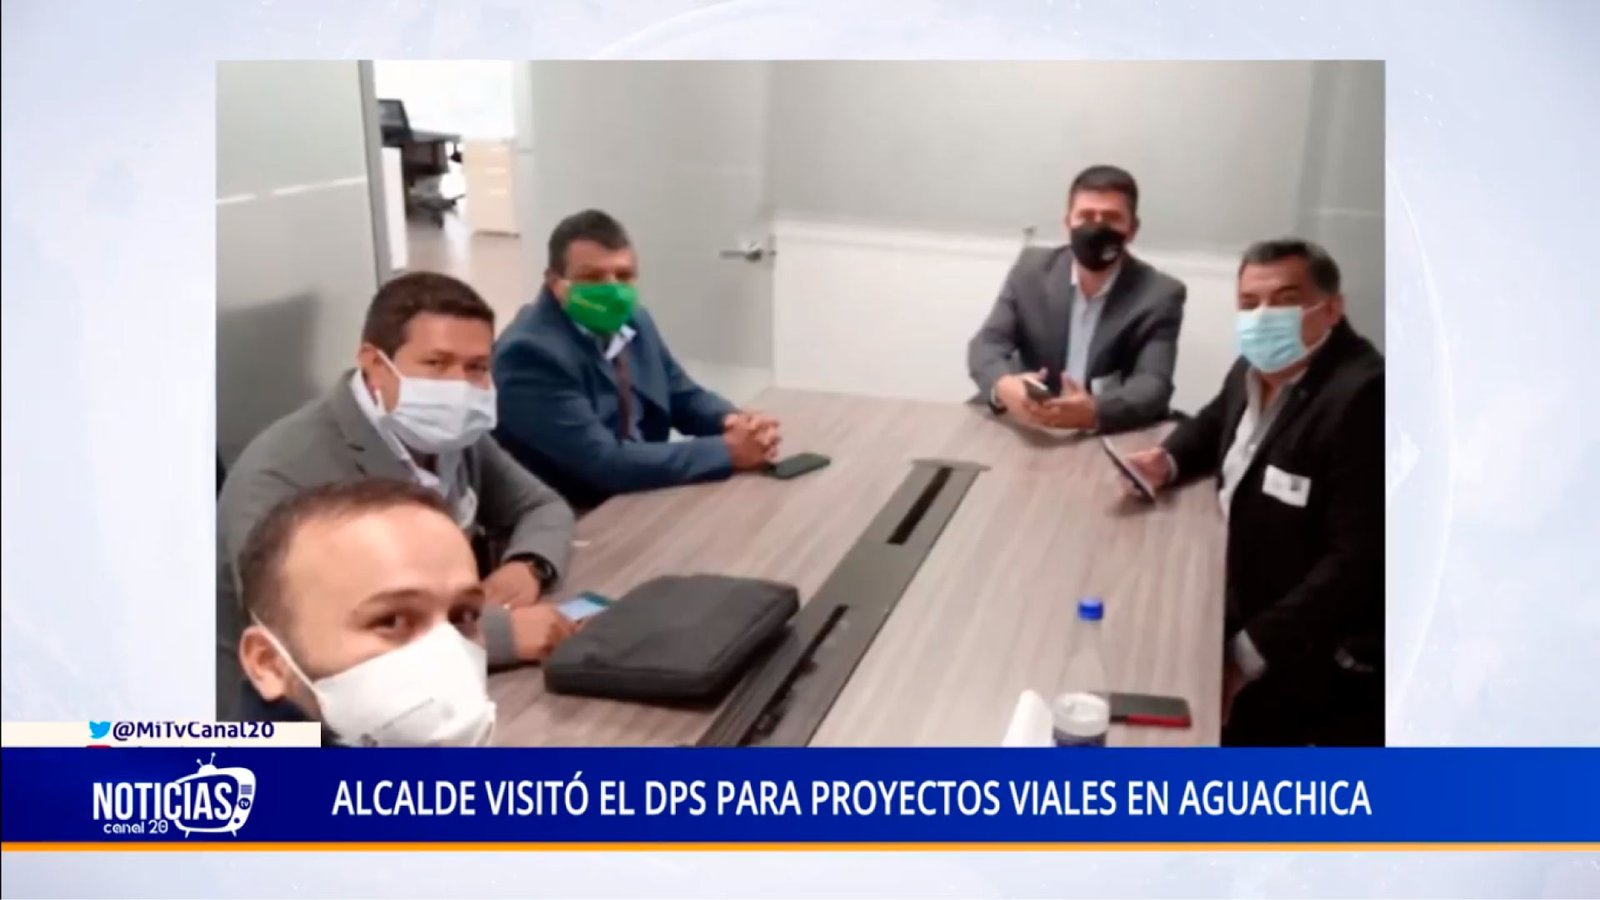 ALCALDE VISITÓ EL DPS PARA PROYECTOS VIALES EN AGUACHICA